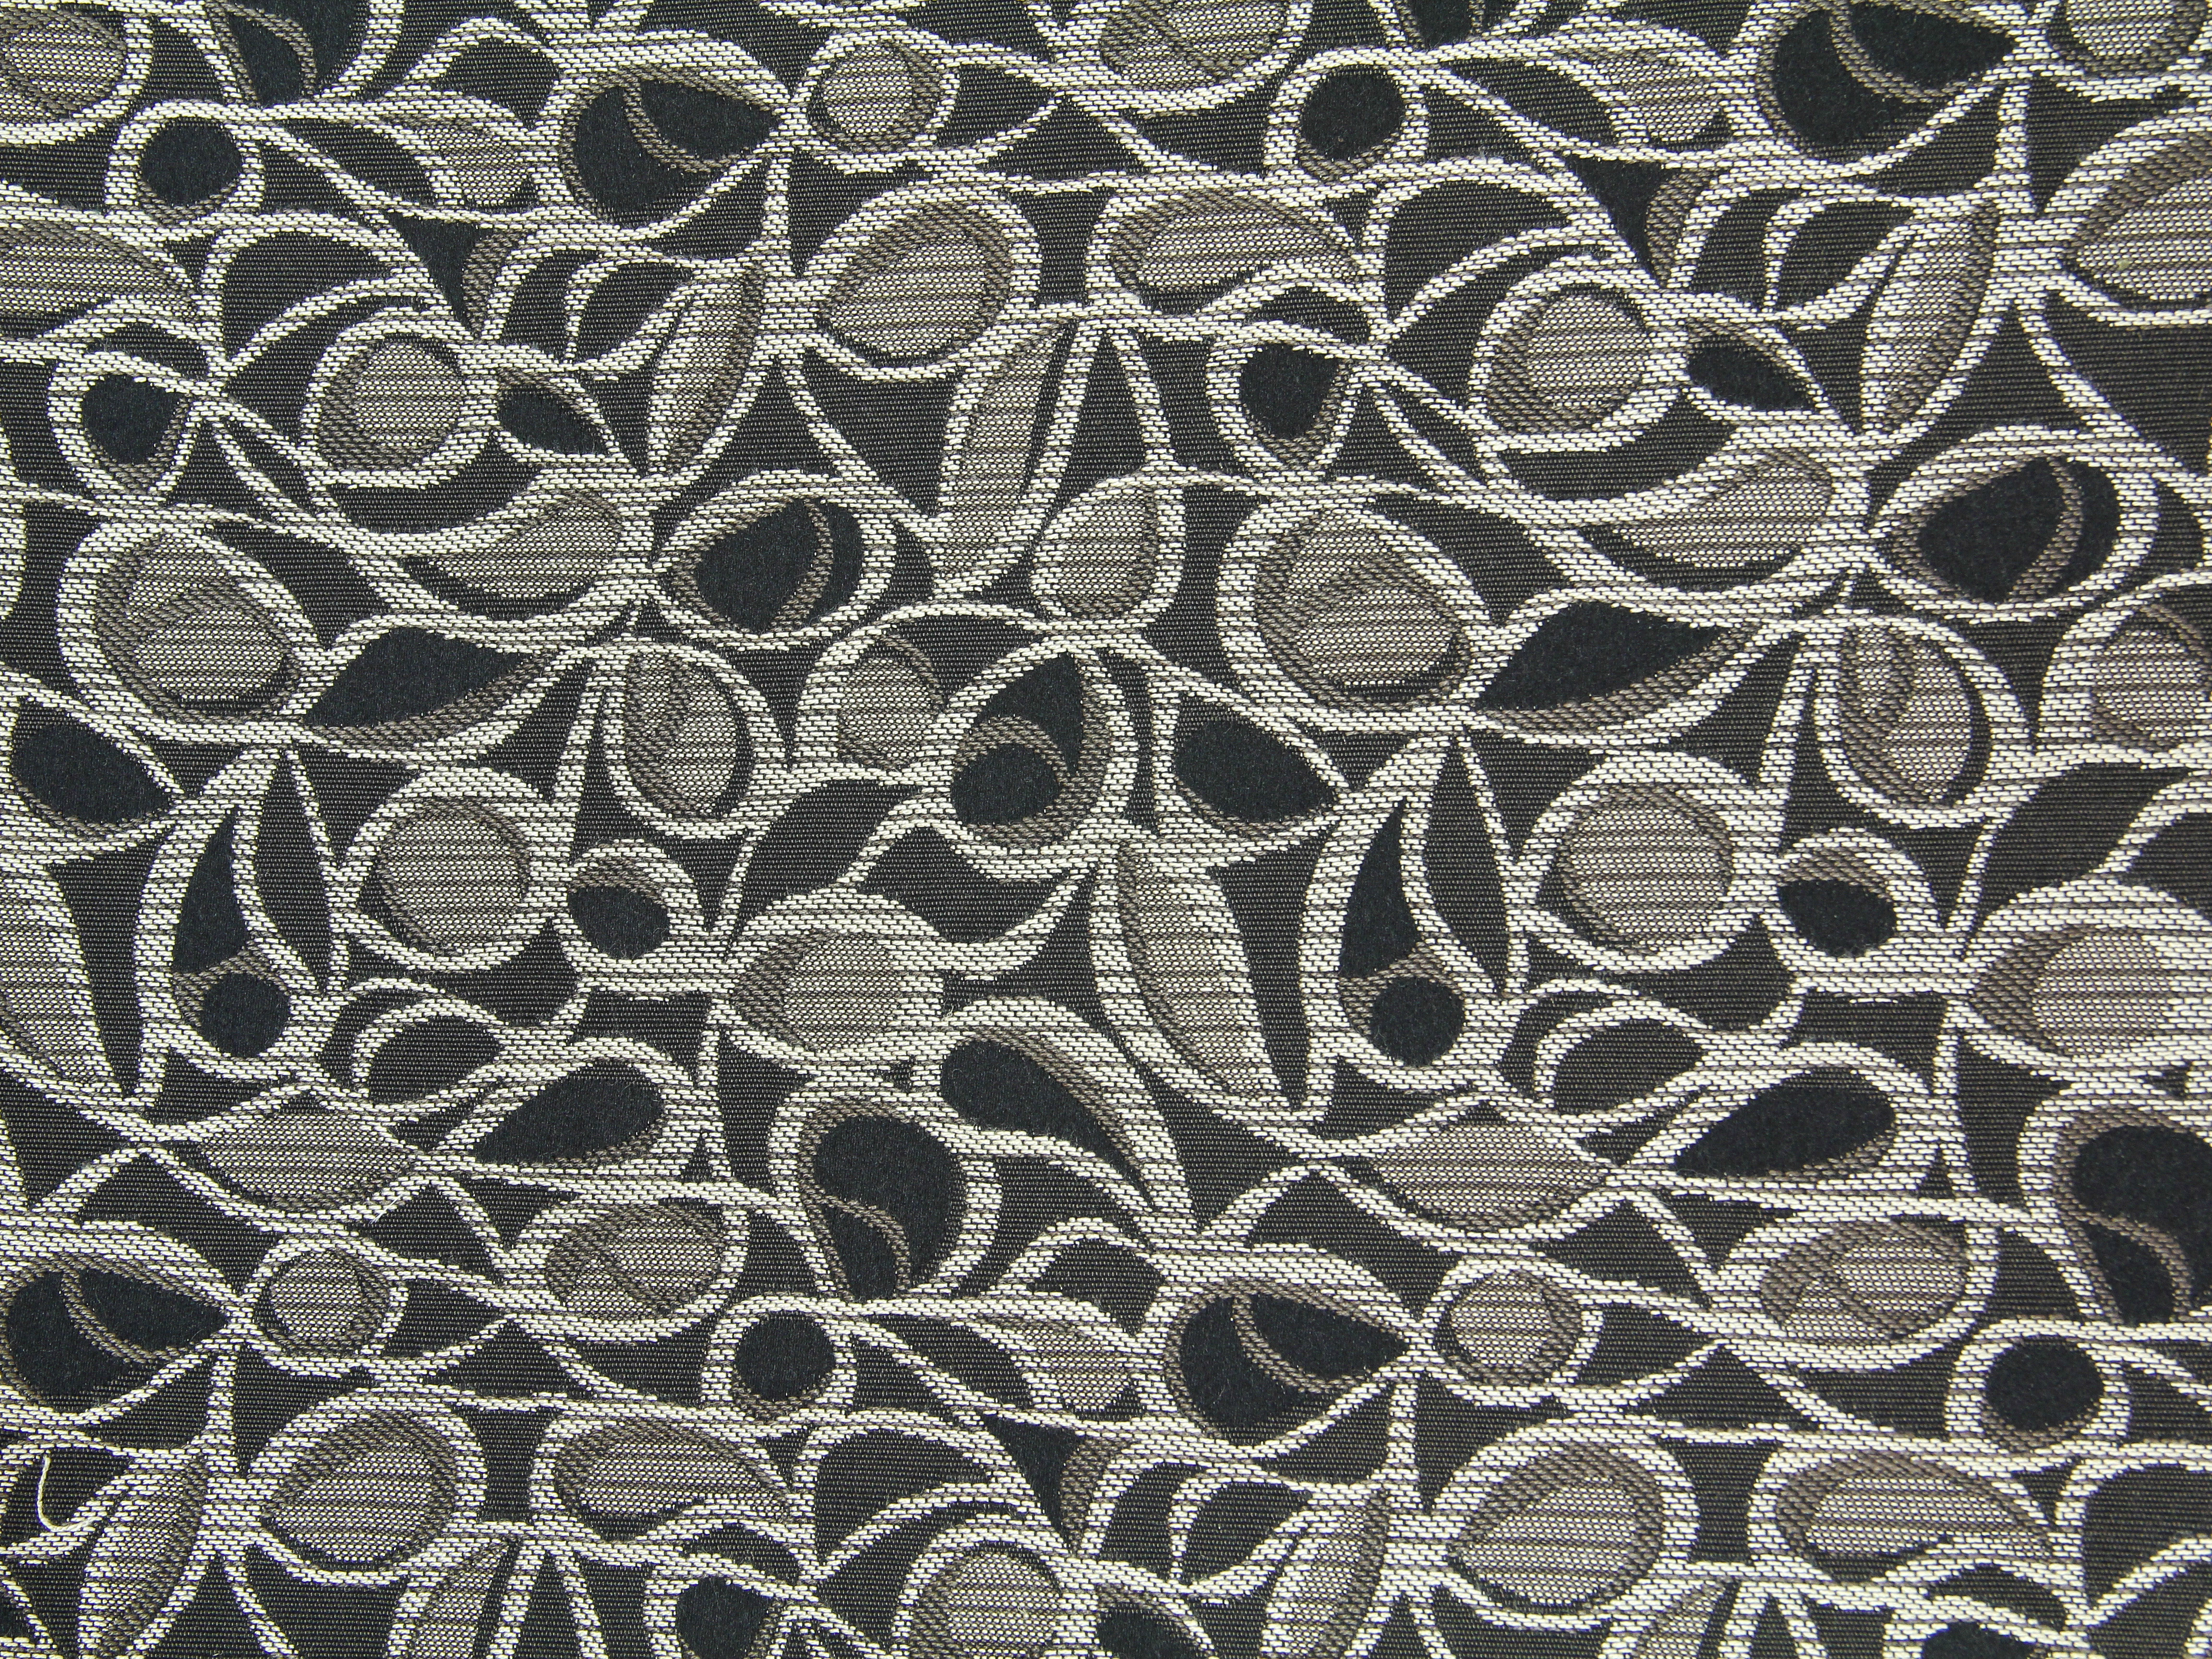 Fabric design photo